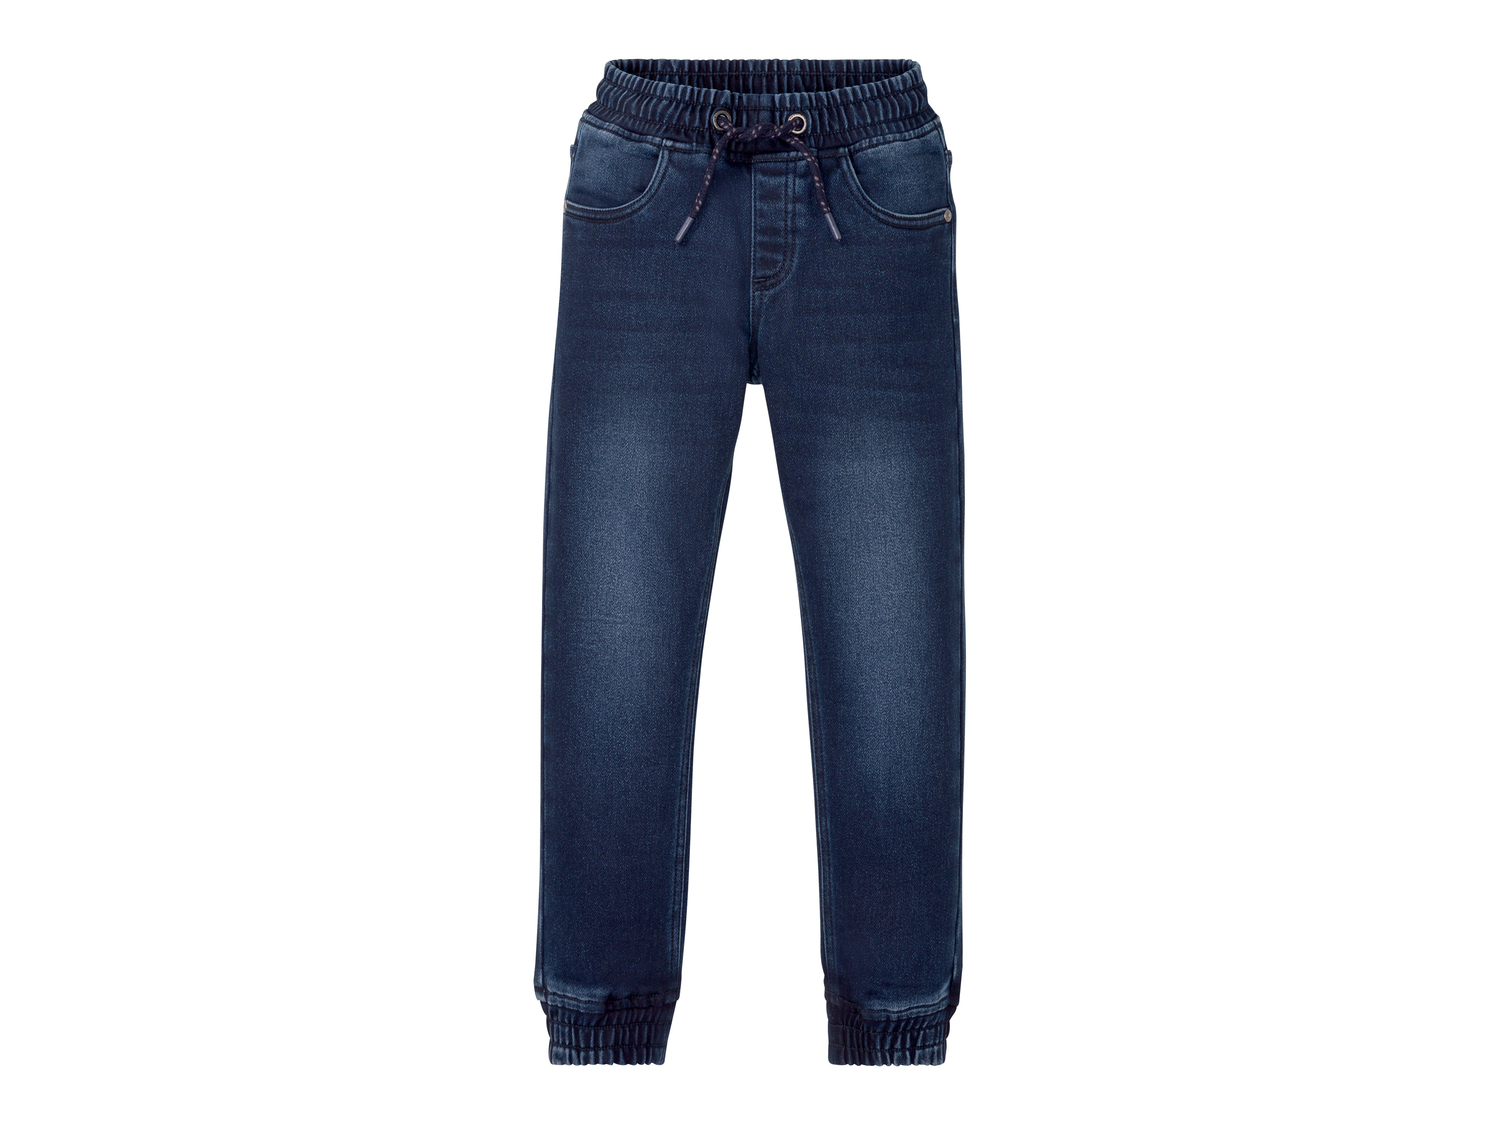 Jeans da bambino Pepperts, prezzo 11.99 &#8364; 
Misure: 6-14 anni
Taglie disponibili

Caratteristiche

- ...